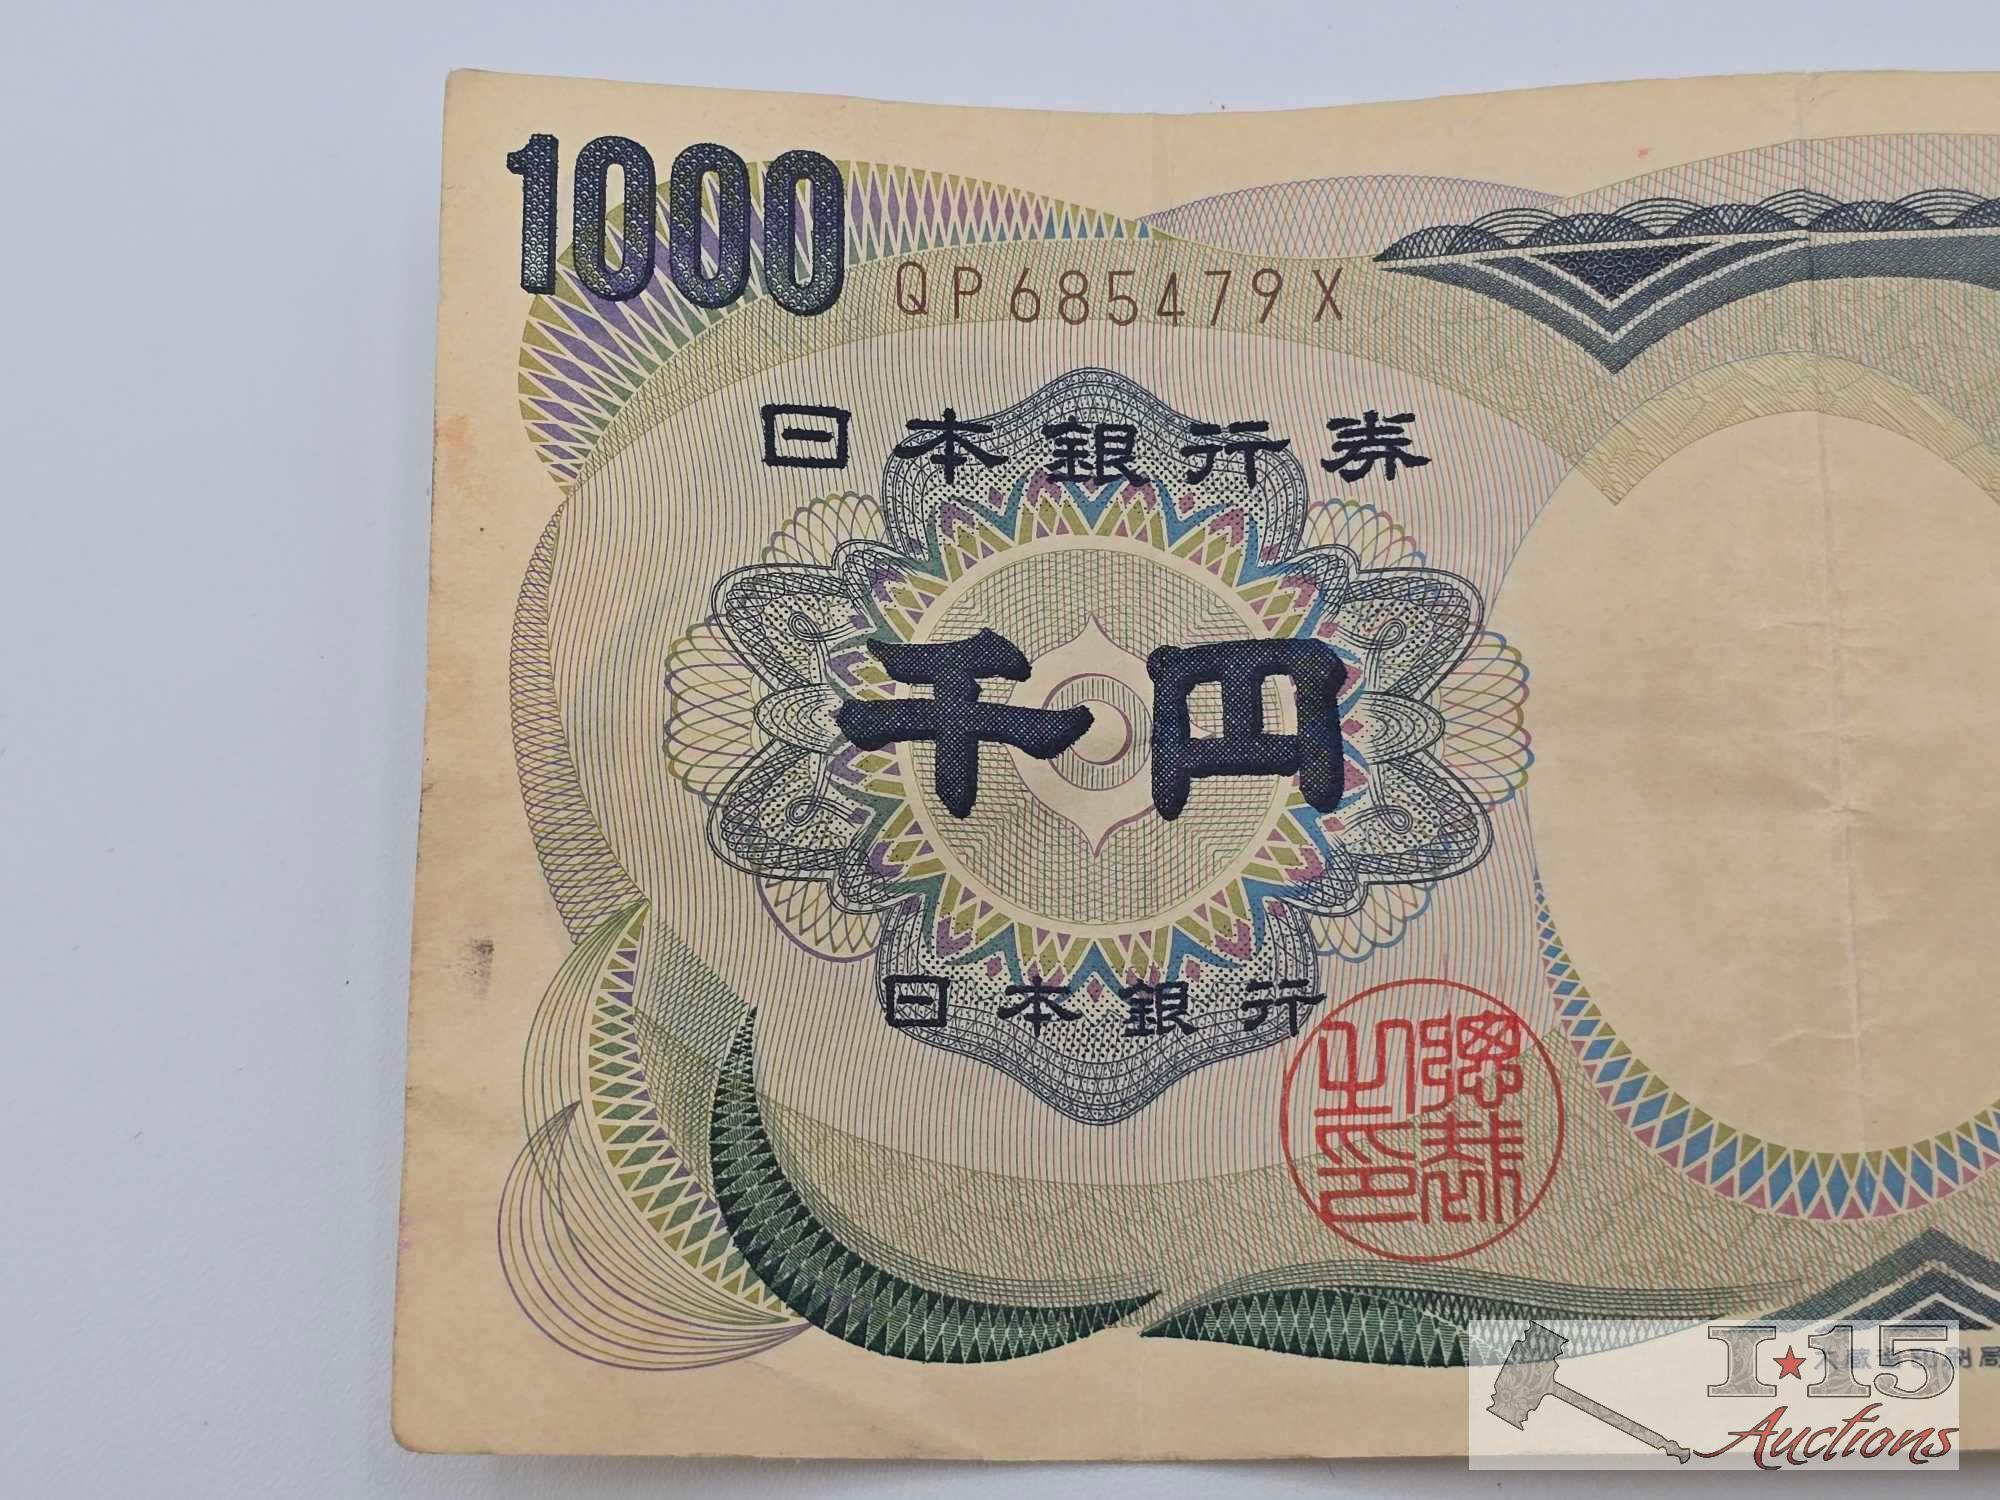 Japan 1000 Yen Banknote